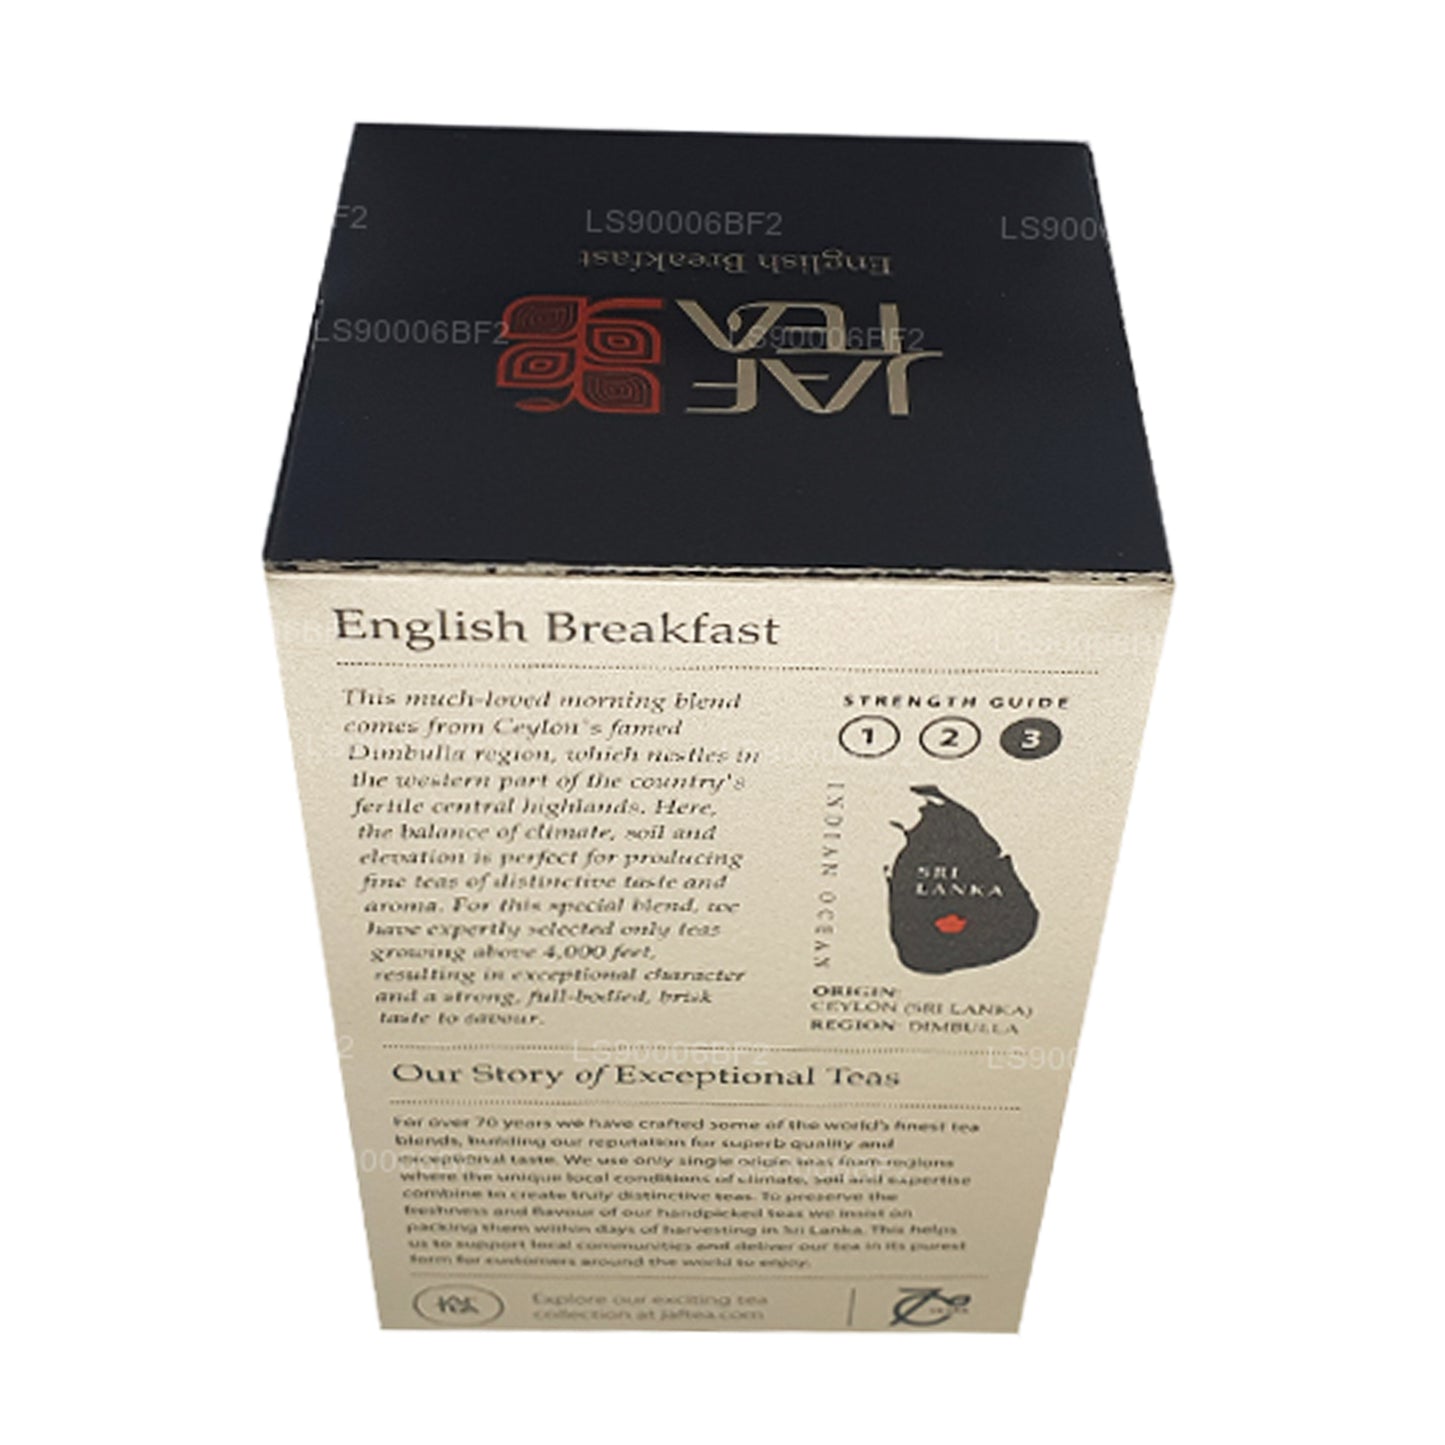 Jaf Tea Śniadanie angielskie (40g) 20 torebek